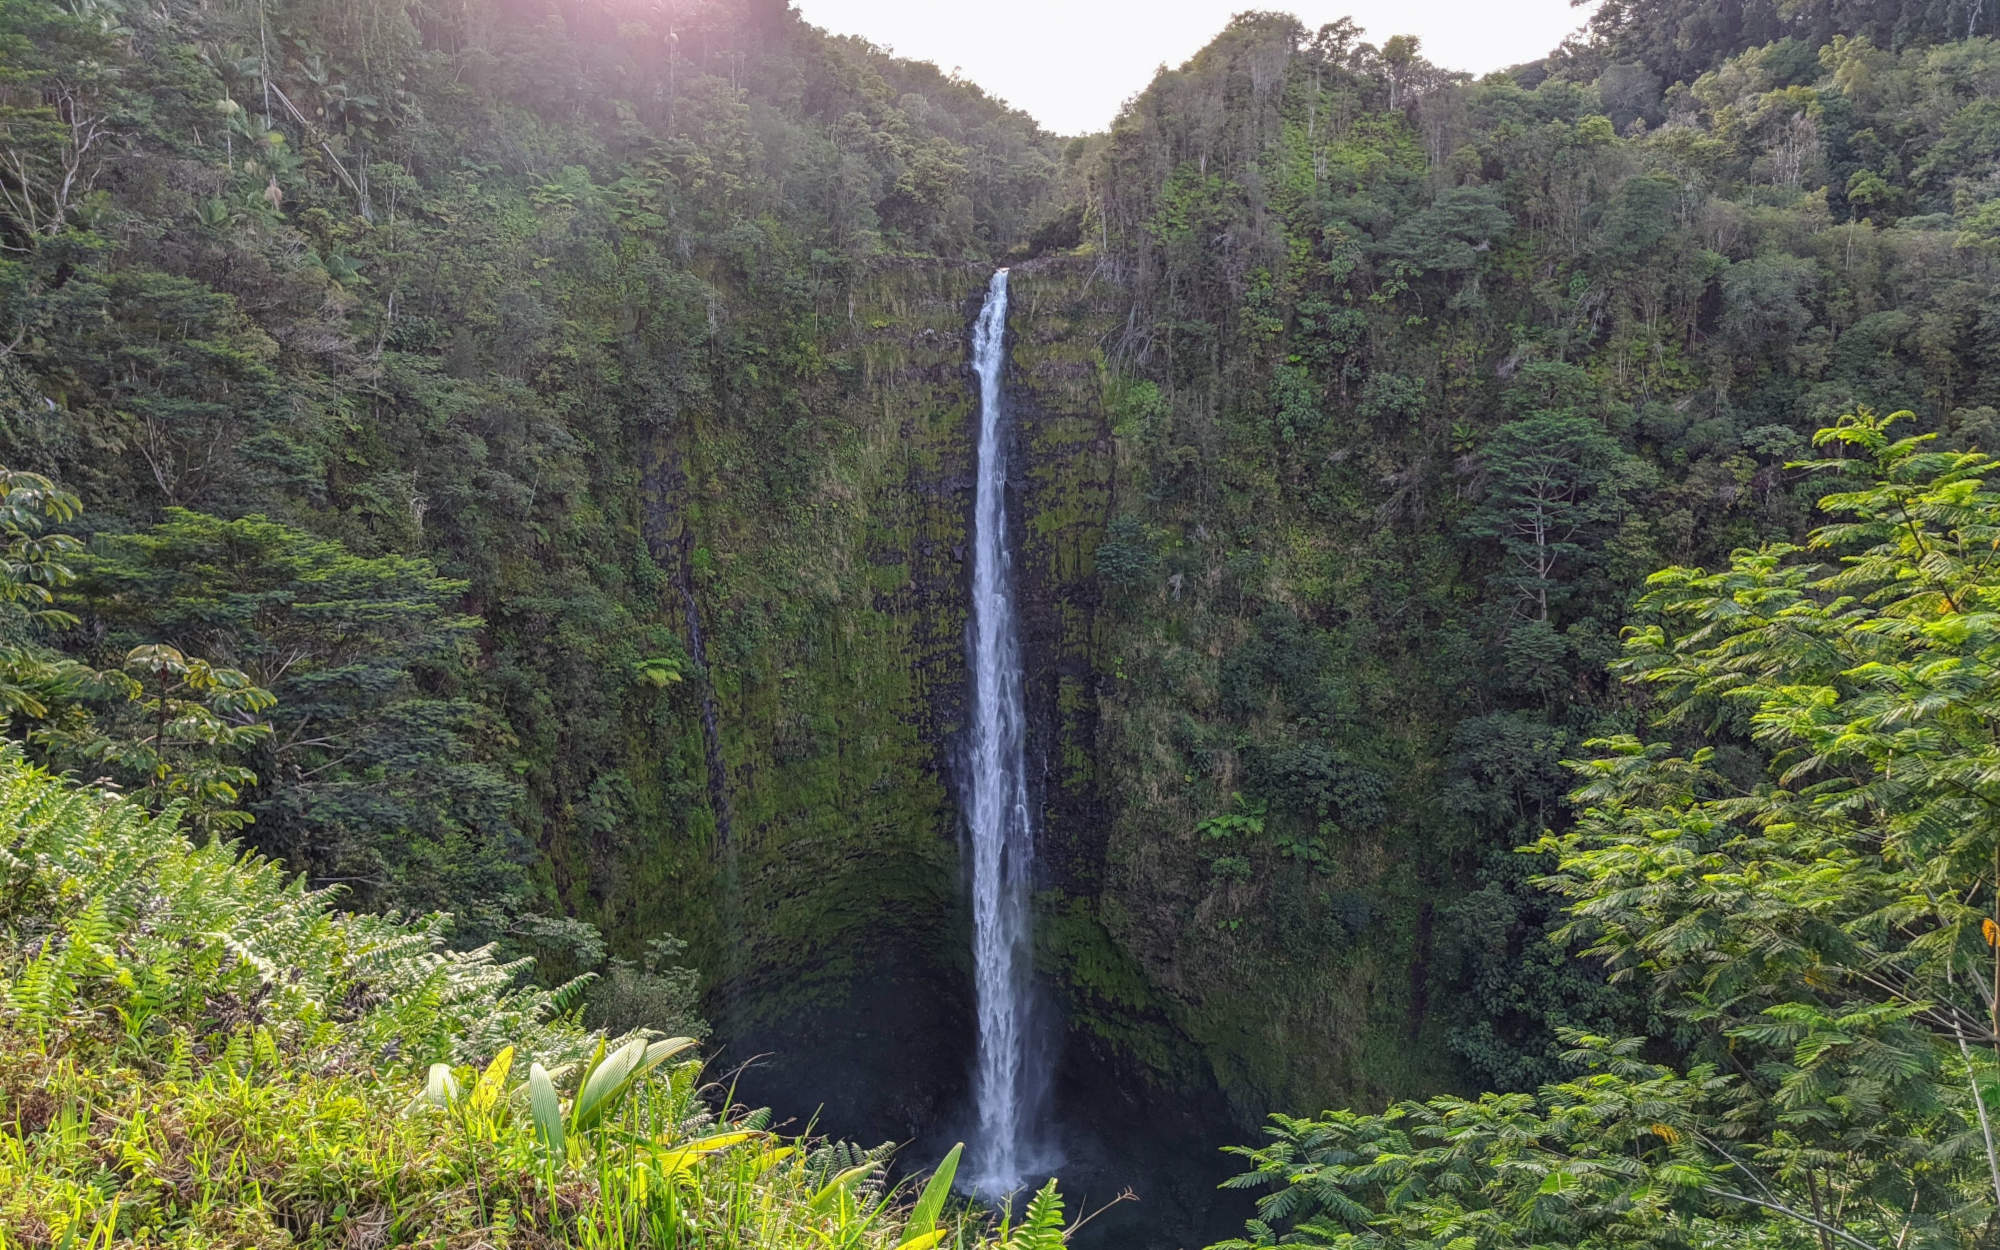 A Week on Maui